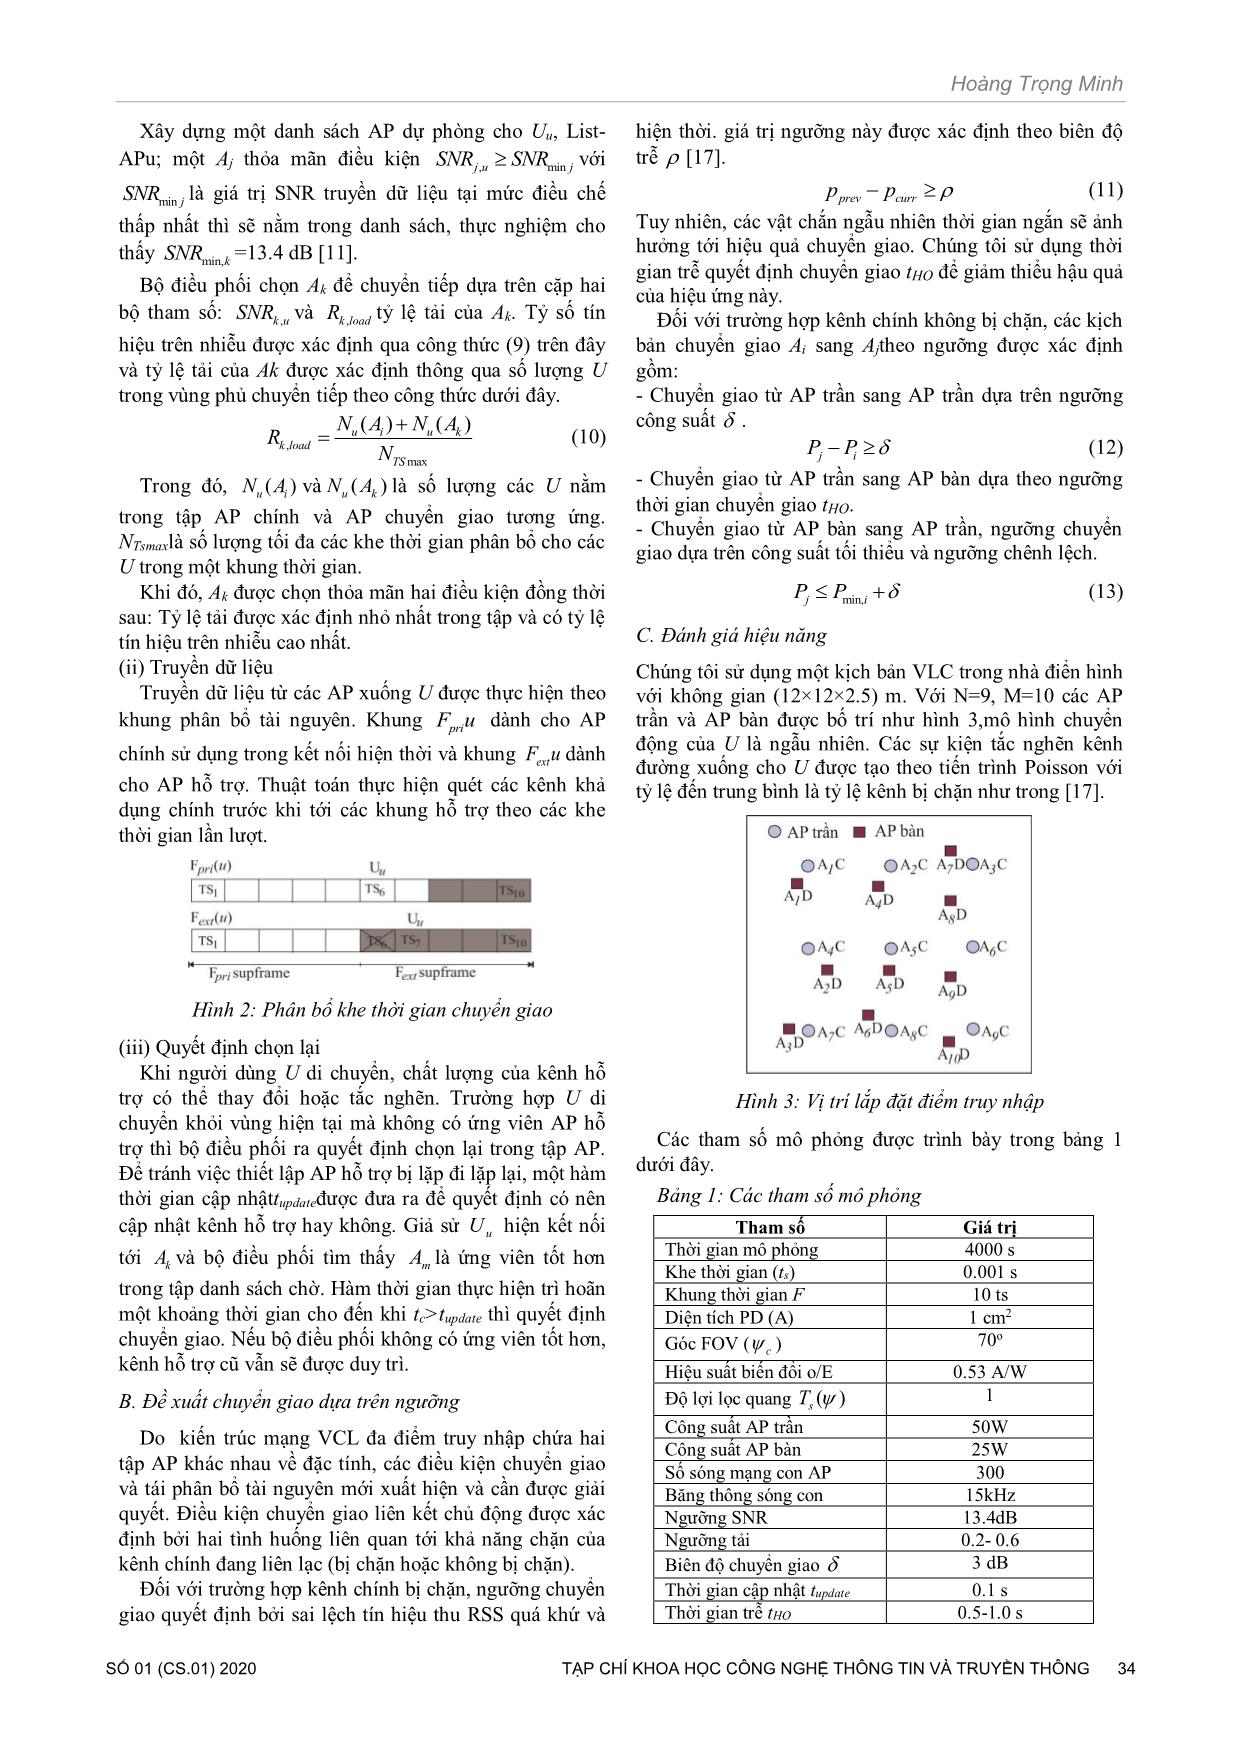 Hiệu năng chuyển giao liên kết chủ động cho mạng VLC trong nhà trang 3